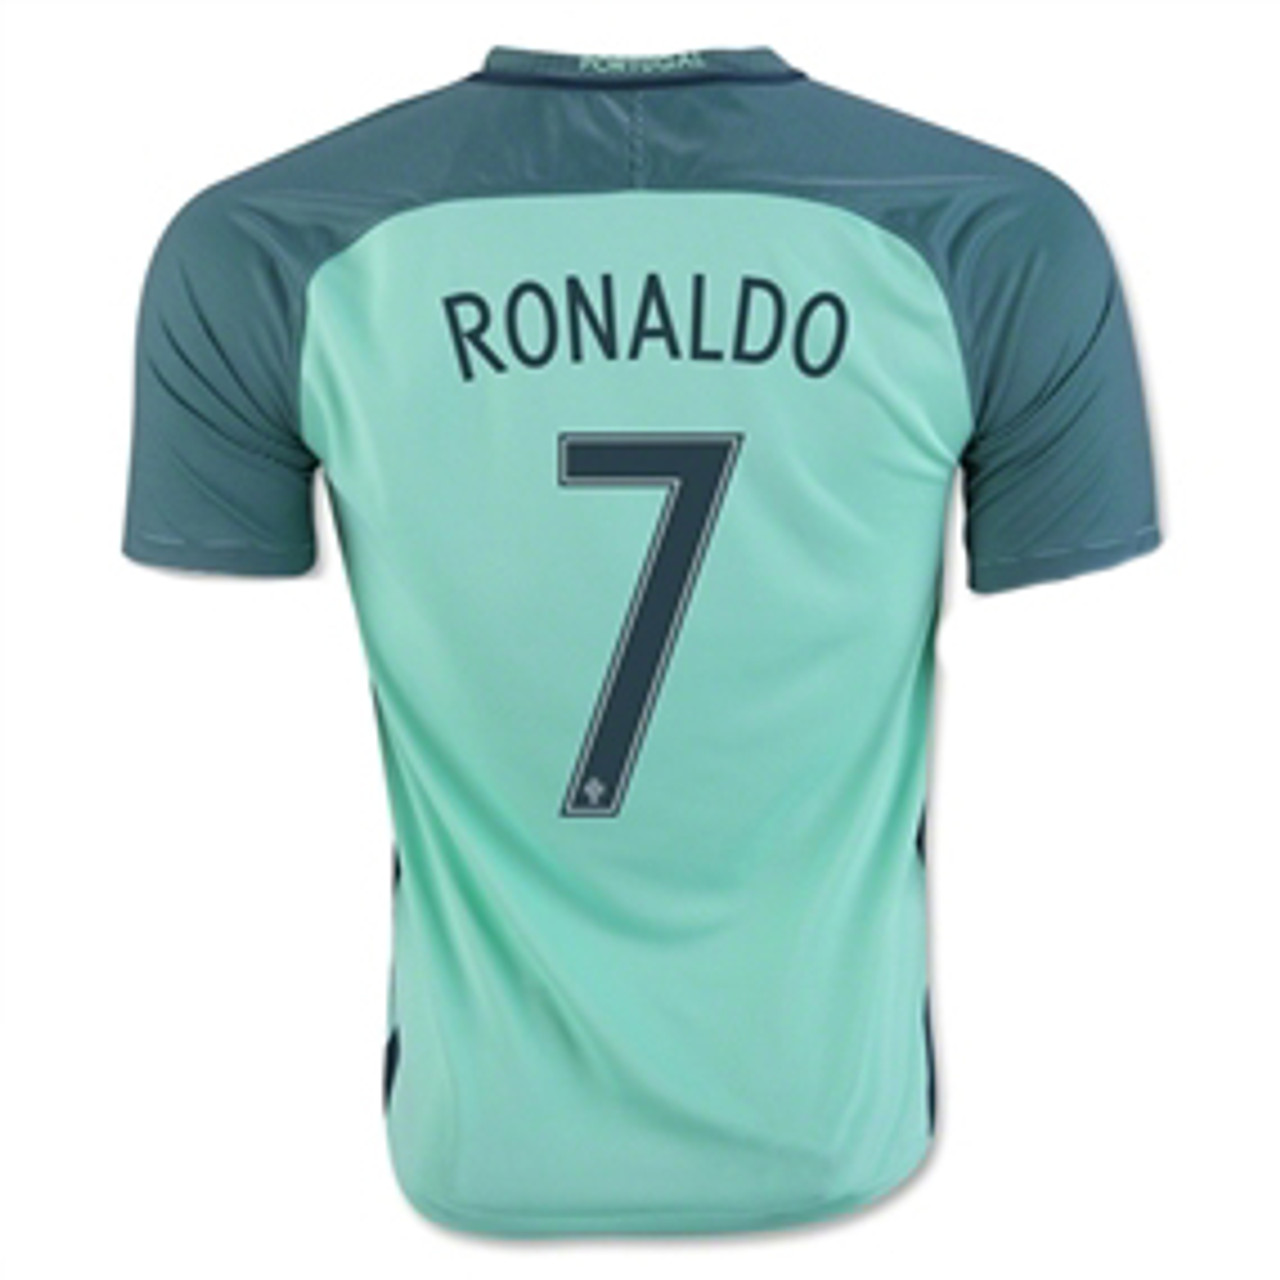 ronaldo portugal shirt